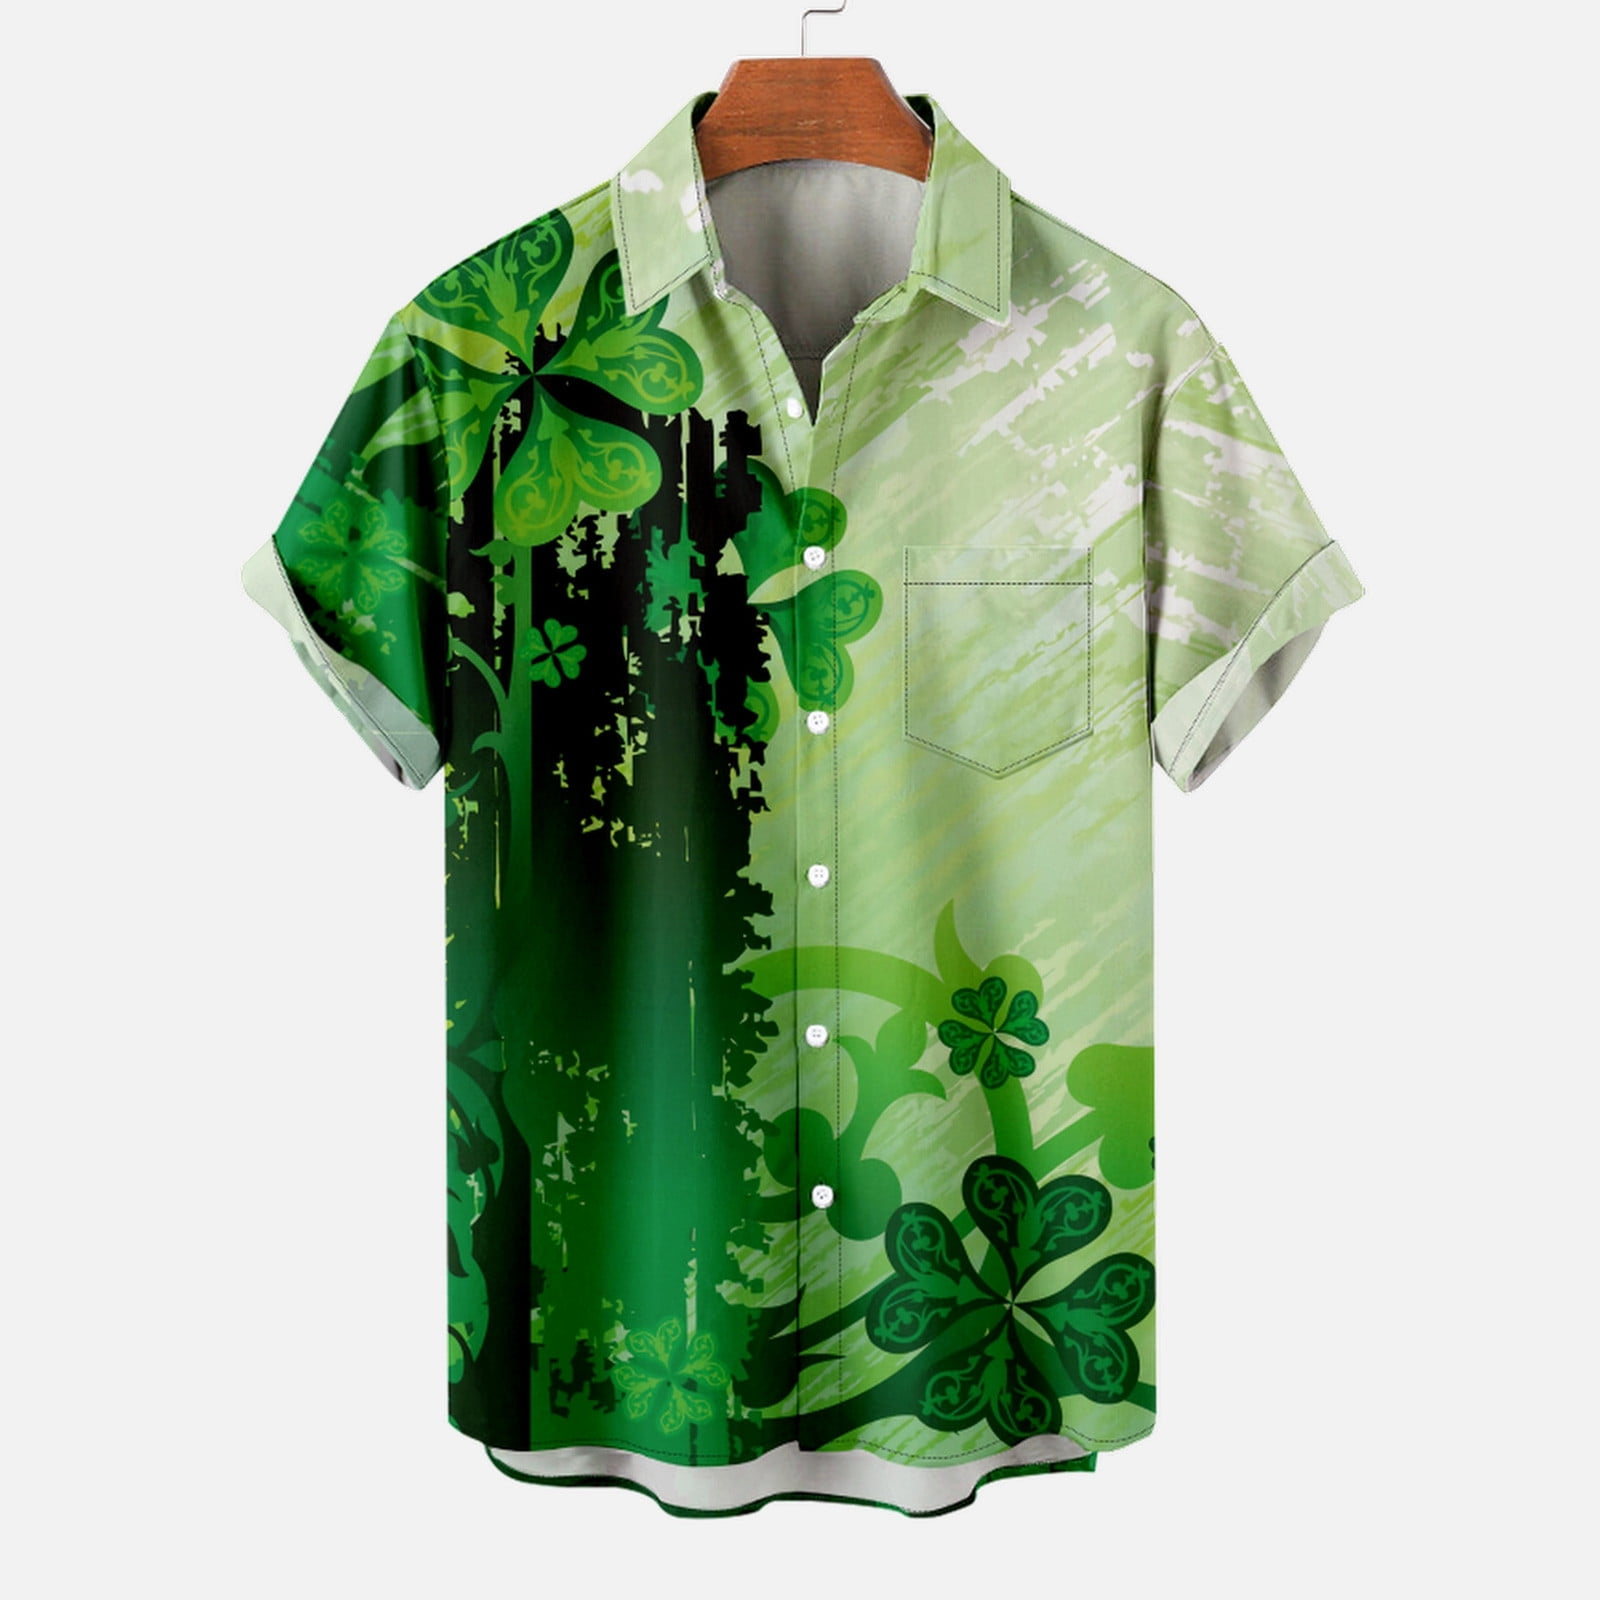 OwlOhh Milwaukee Bucks Hawaiian Shirt Summer Button Up Shirt for Men Beach Wear Short Sleeve Hawaii Shirt